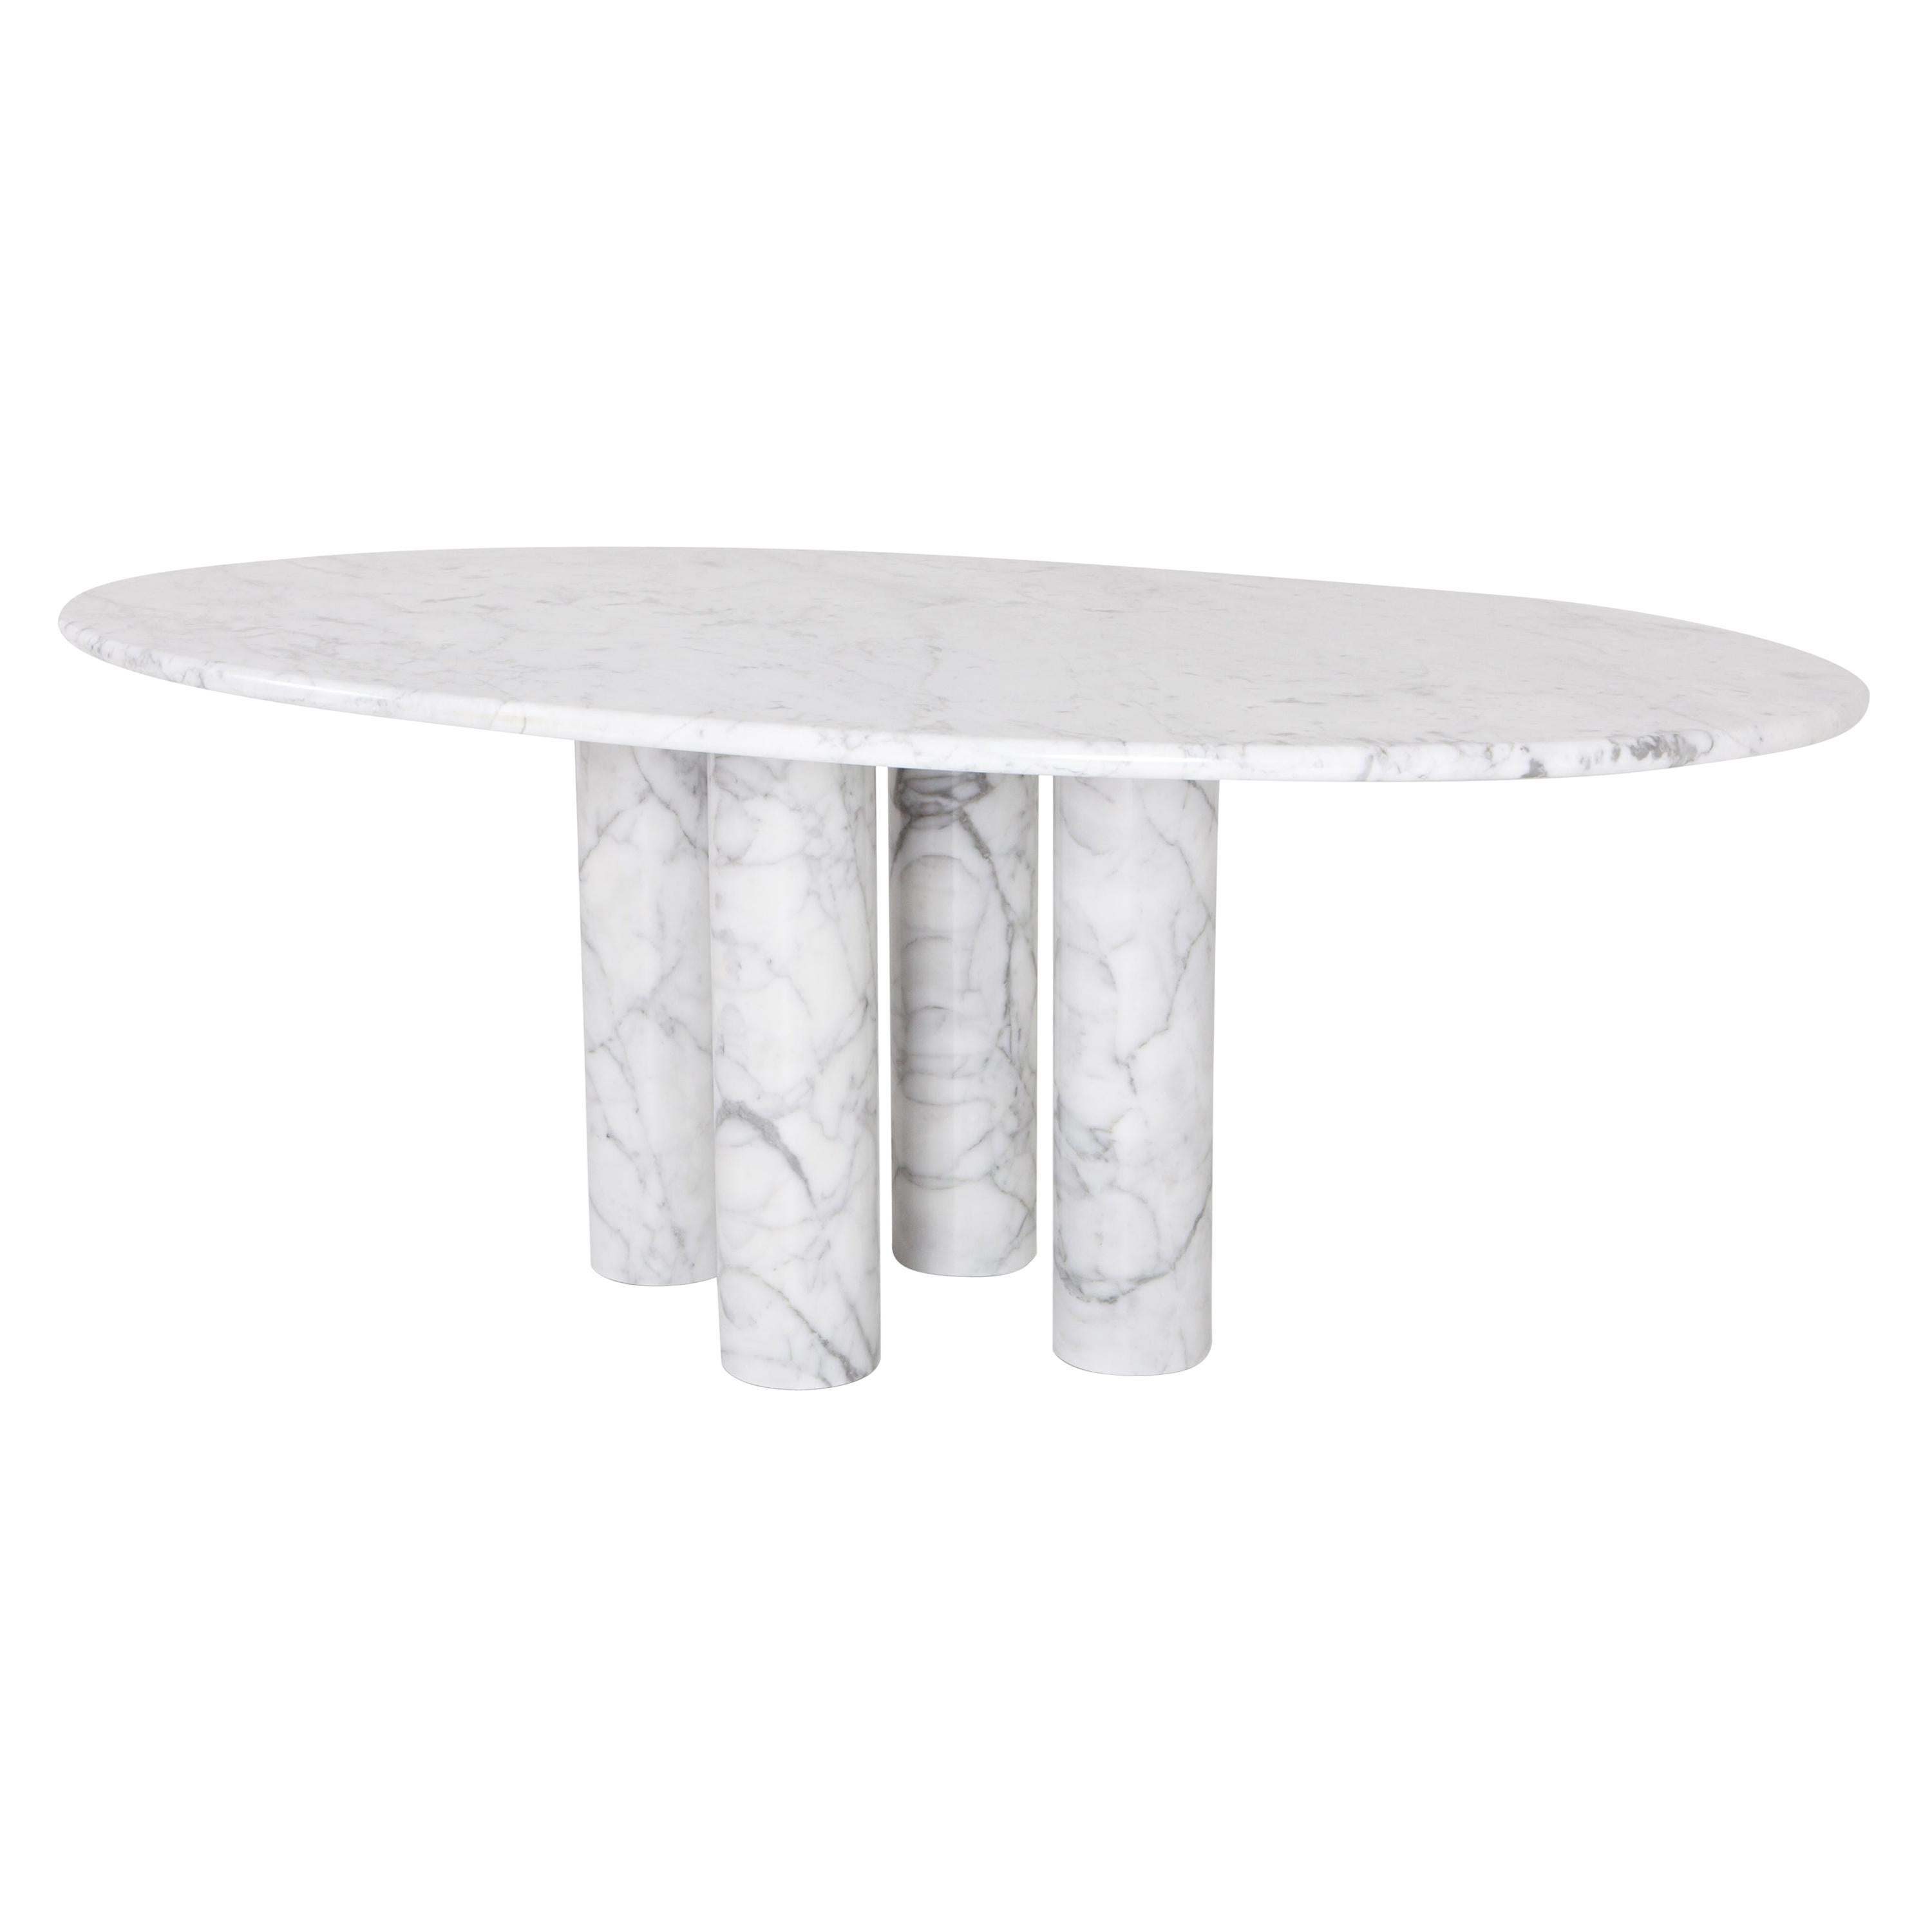 Mario Bellini's 'Il Colonnata' oval table in white marble